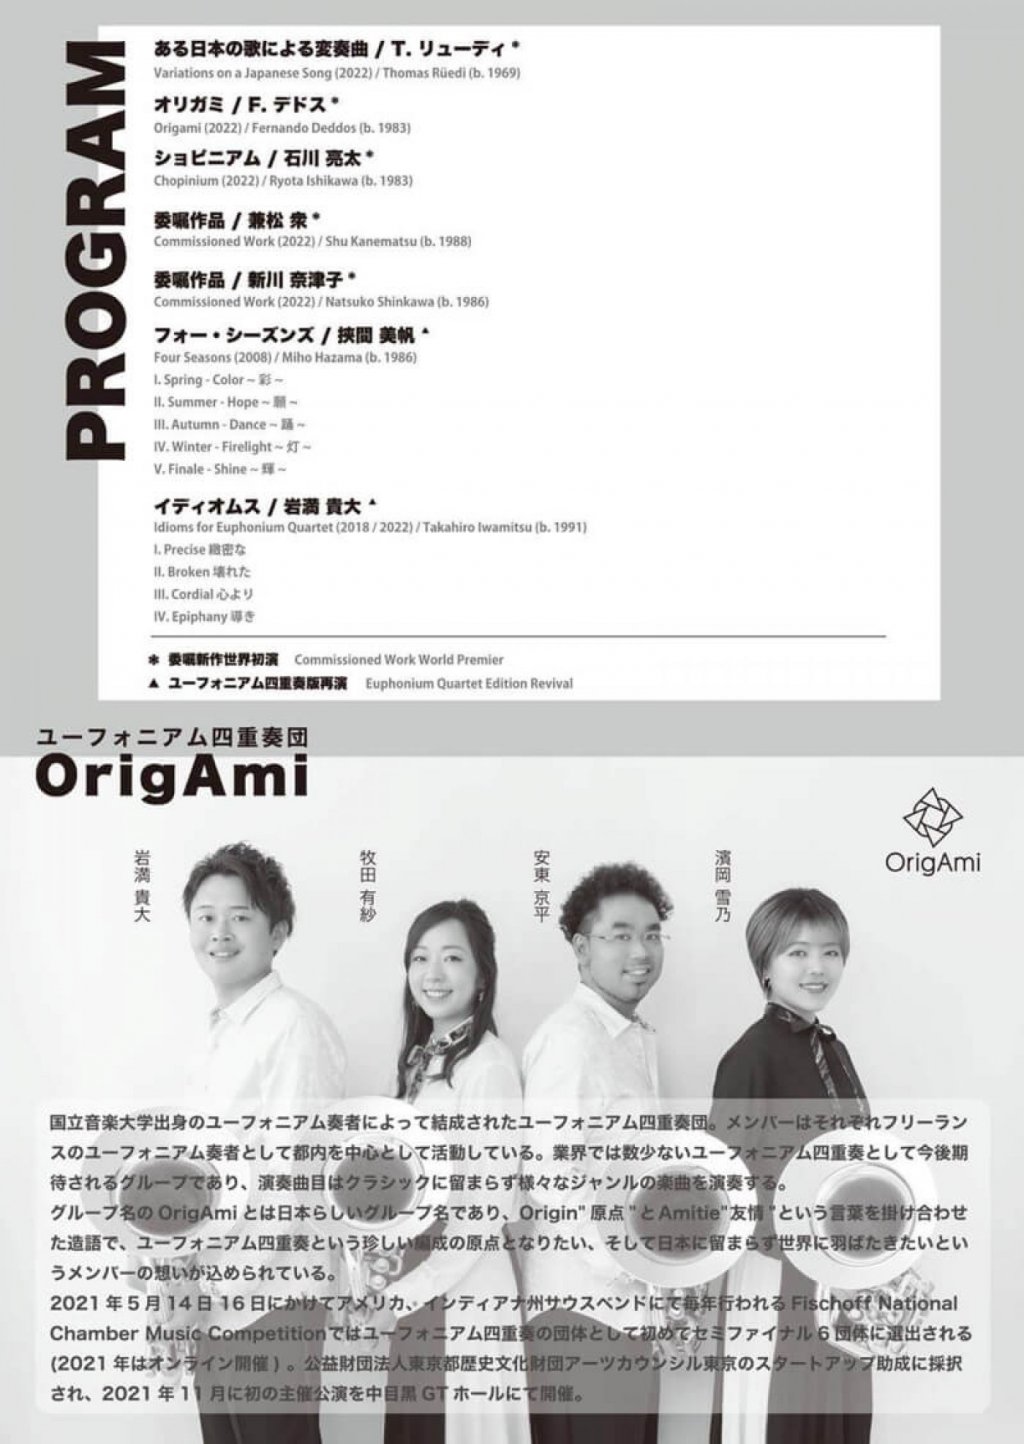 ユーフォニアム四重奏団 OrigAmi コンサートシリーズ 2021 Vol.2